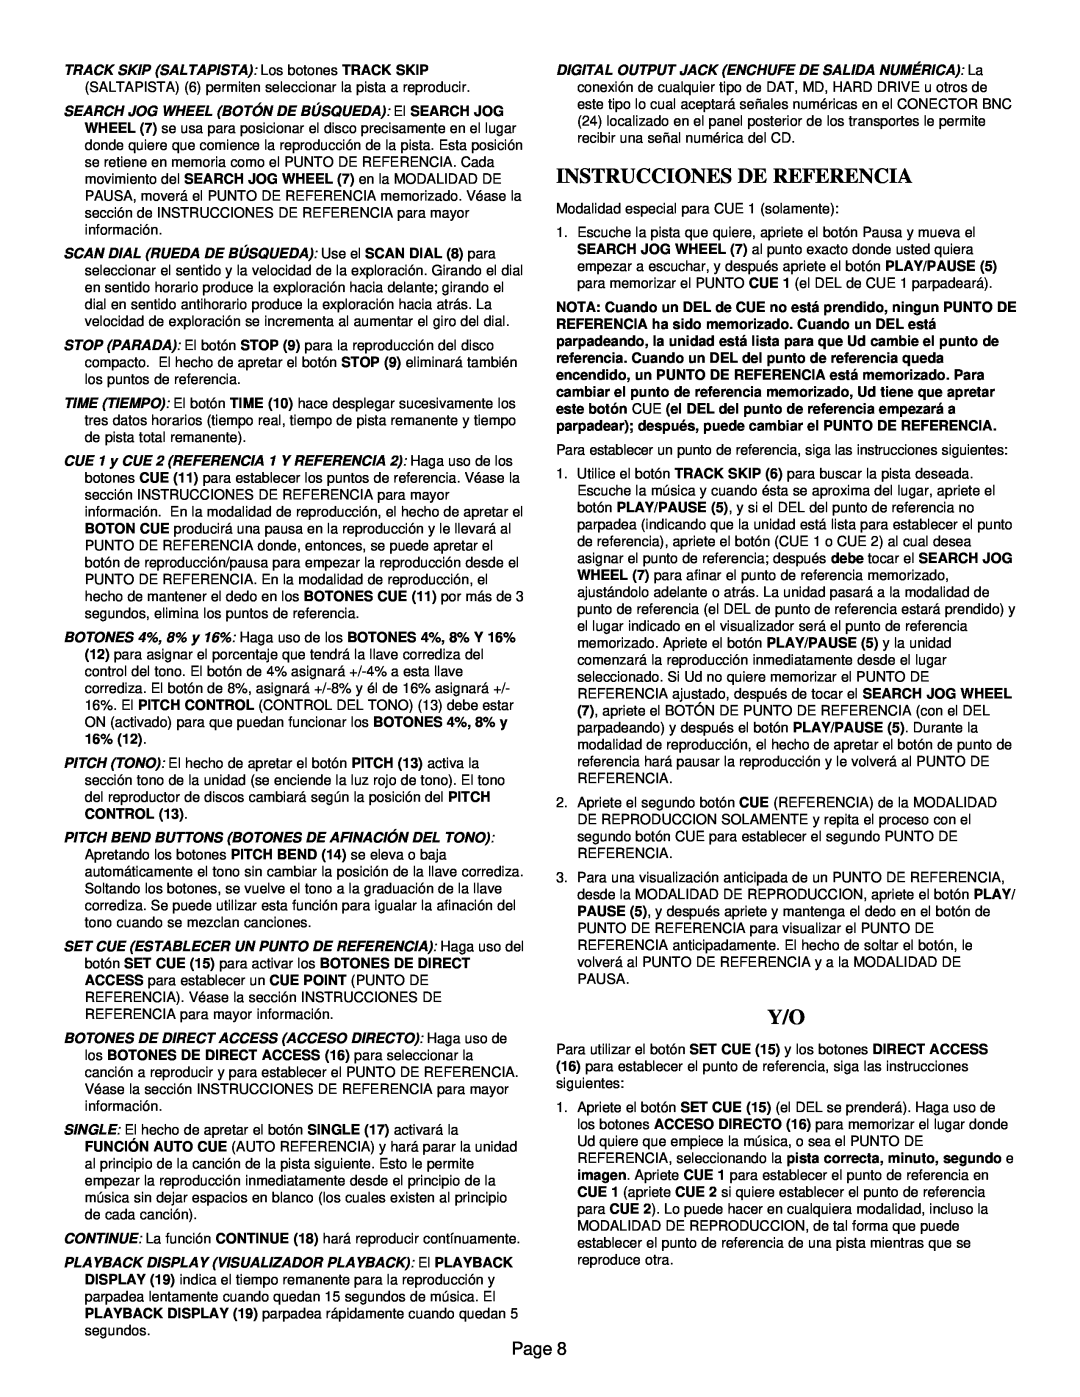 Gemini CD-9800 manual Instrucciones De Referencia, Page 